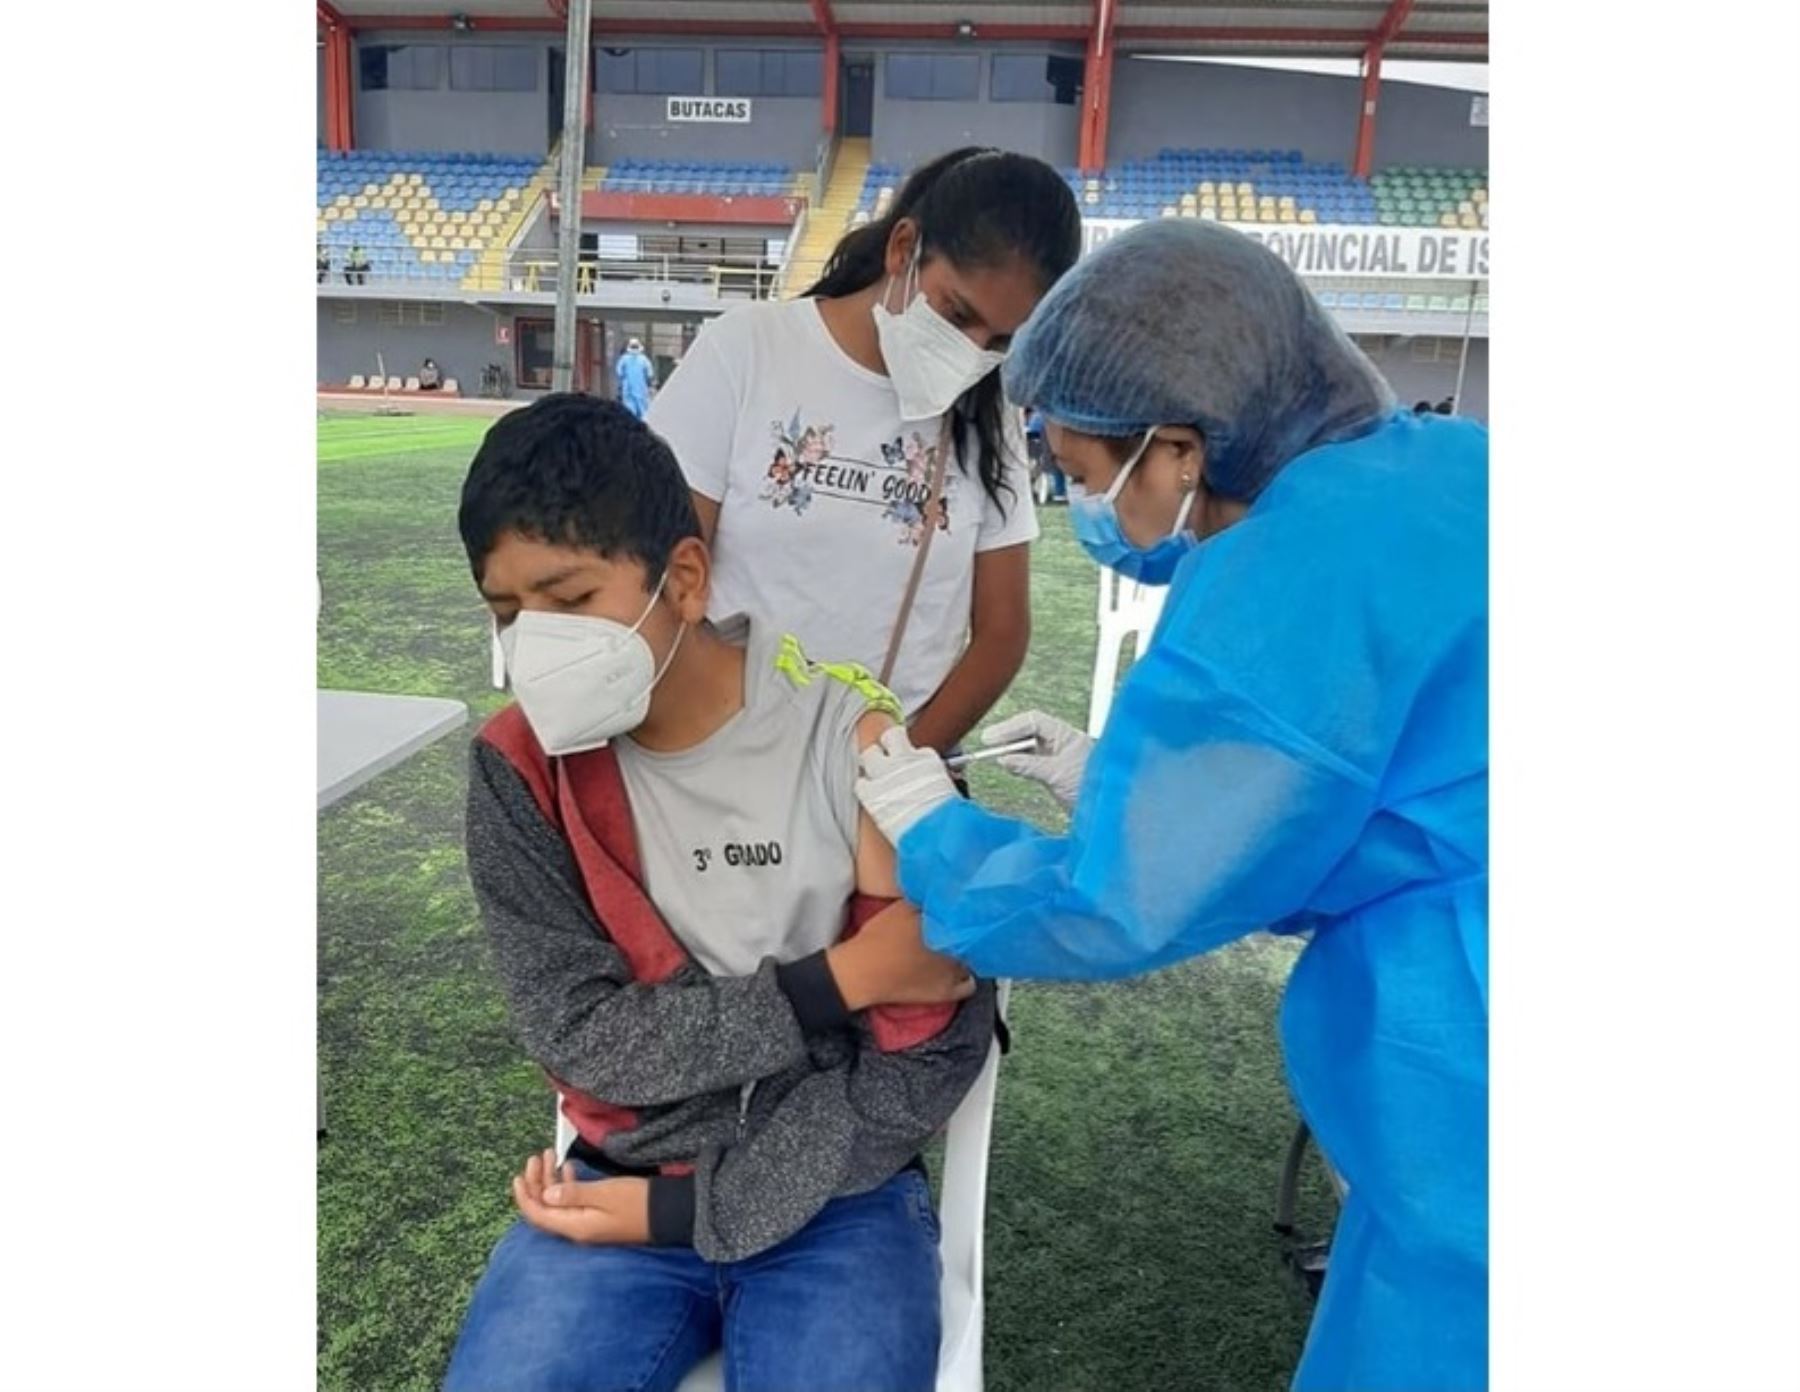 Covid-19: Arequipa suspende labores escolares para facilitar la vacunación de adolescentes